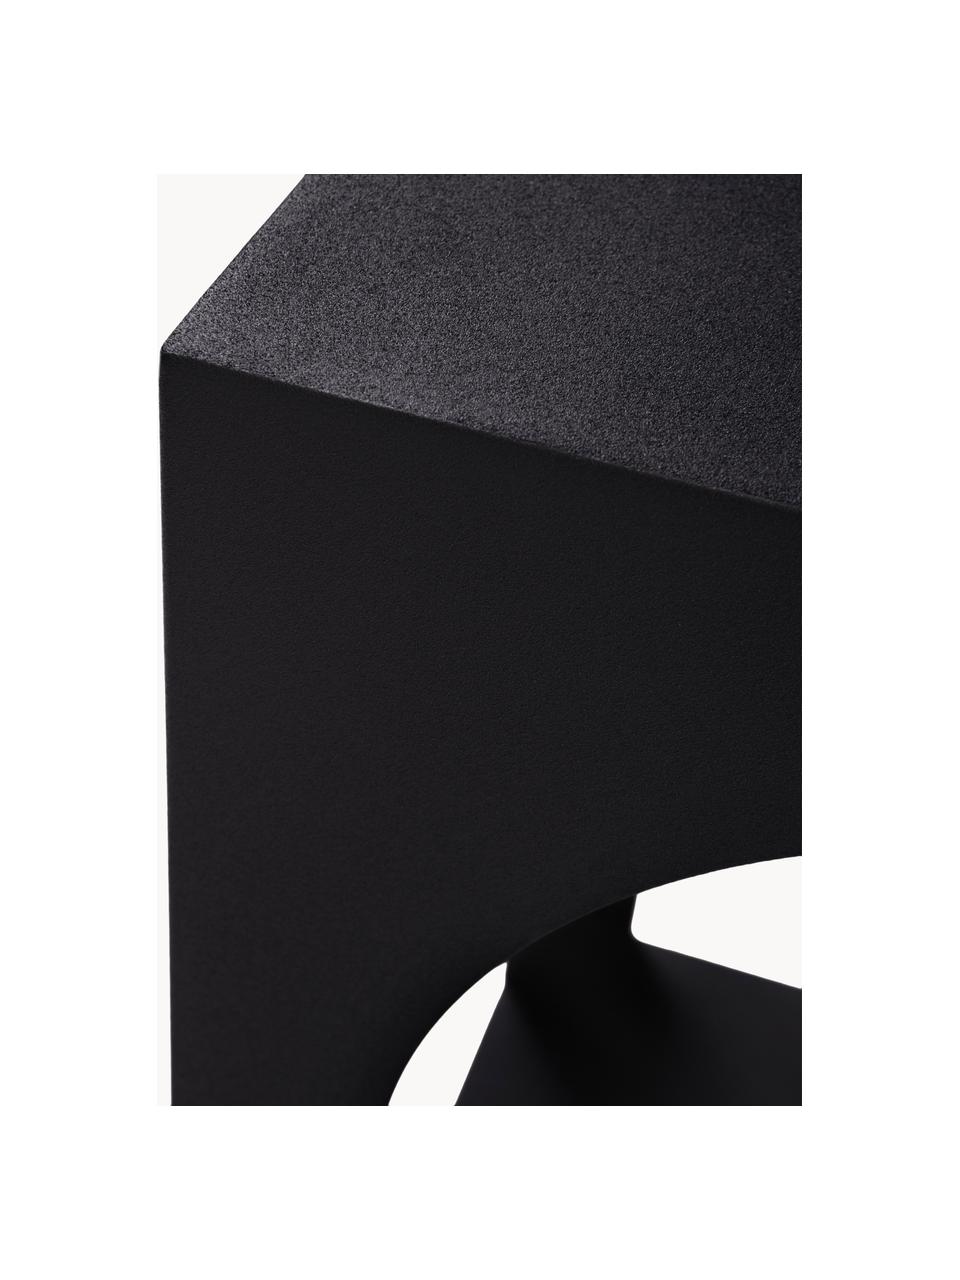 Beistelltisch Vesta mit zusätzlicher Ablage, Mitteldichte Holzfaserplatte (MDF), Eschenholzfurnier, Holz, schwarz lackiert, B 40 x H 59 cm